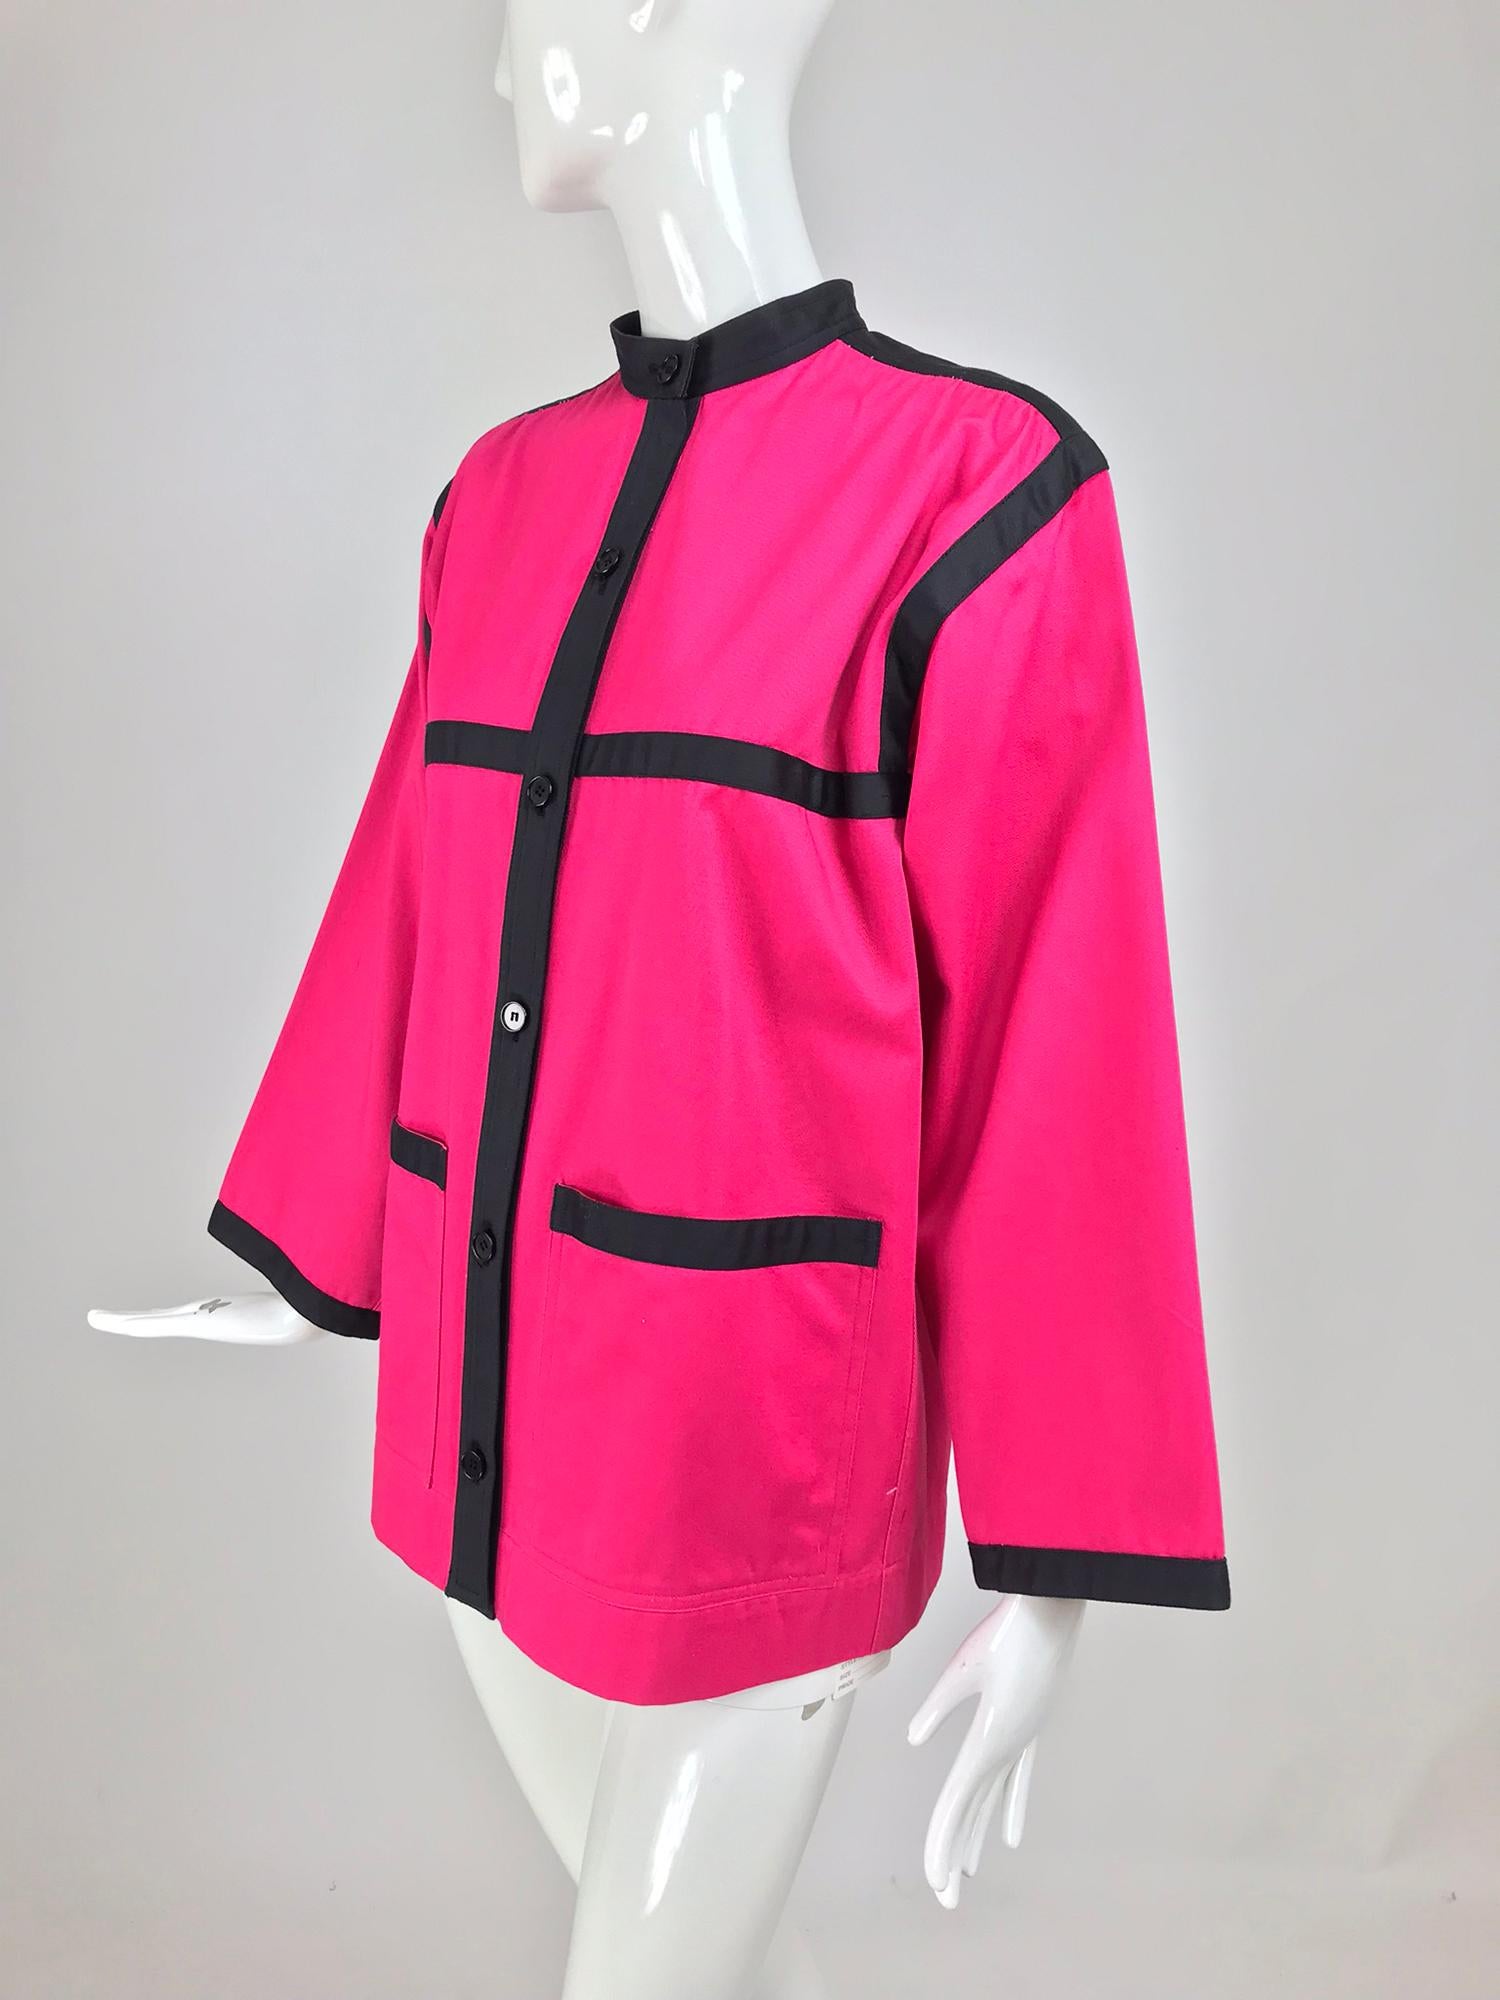 Yves Saint Laurent Hot Pink Colour Block Jacket 1970s For Sale 7